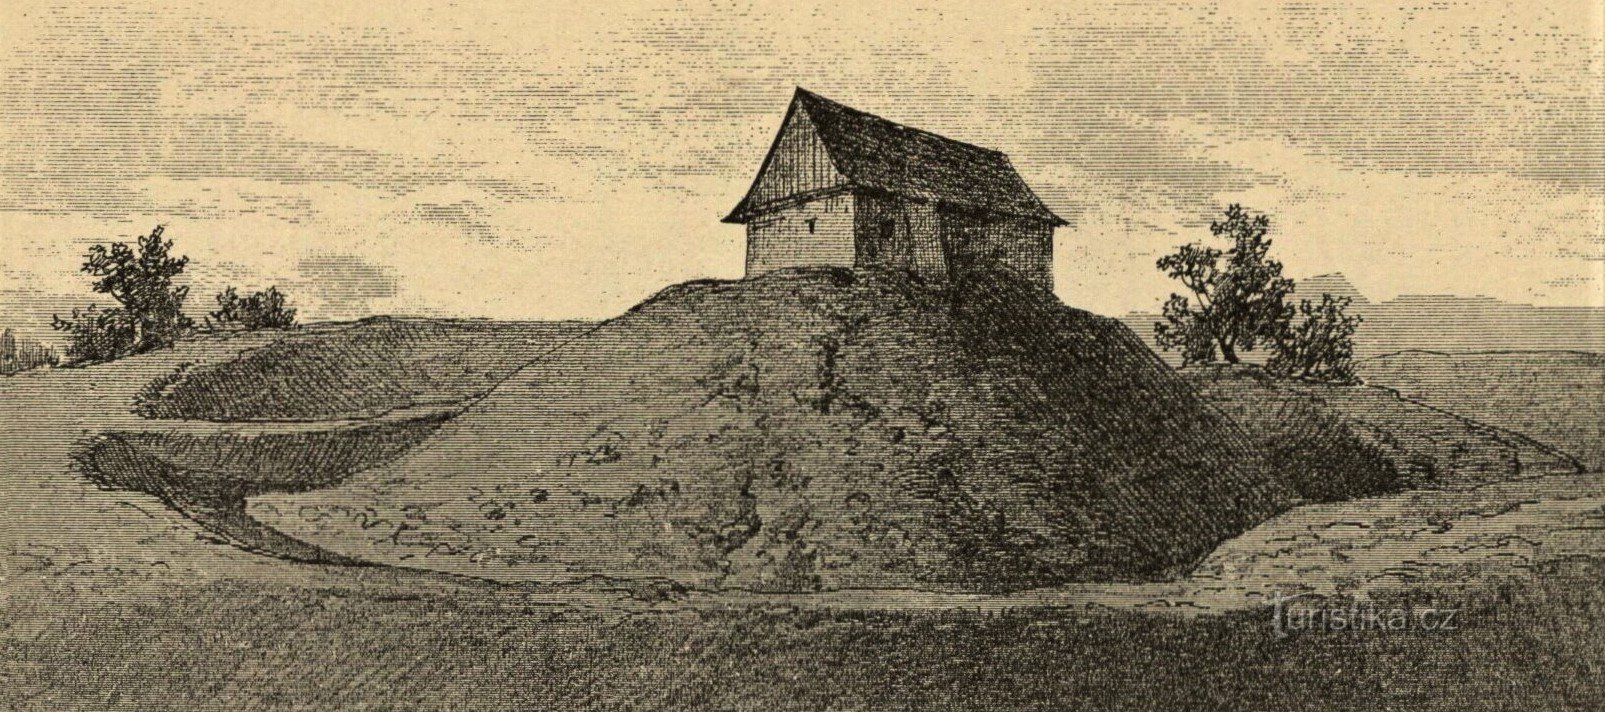 Izgled tvrđave Velkosvatoňovice u 19. stoljeću